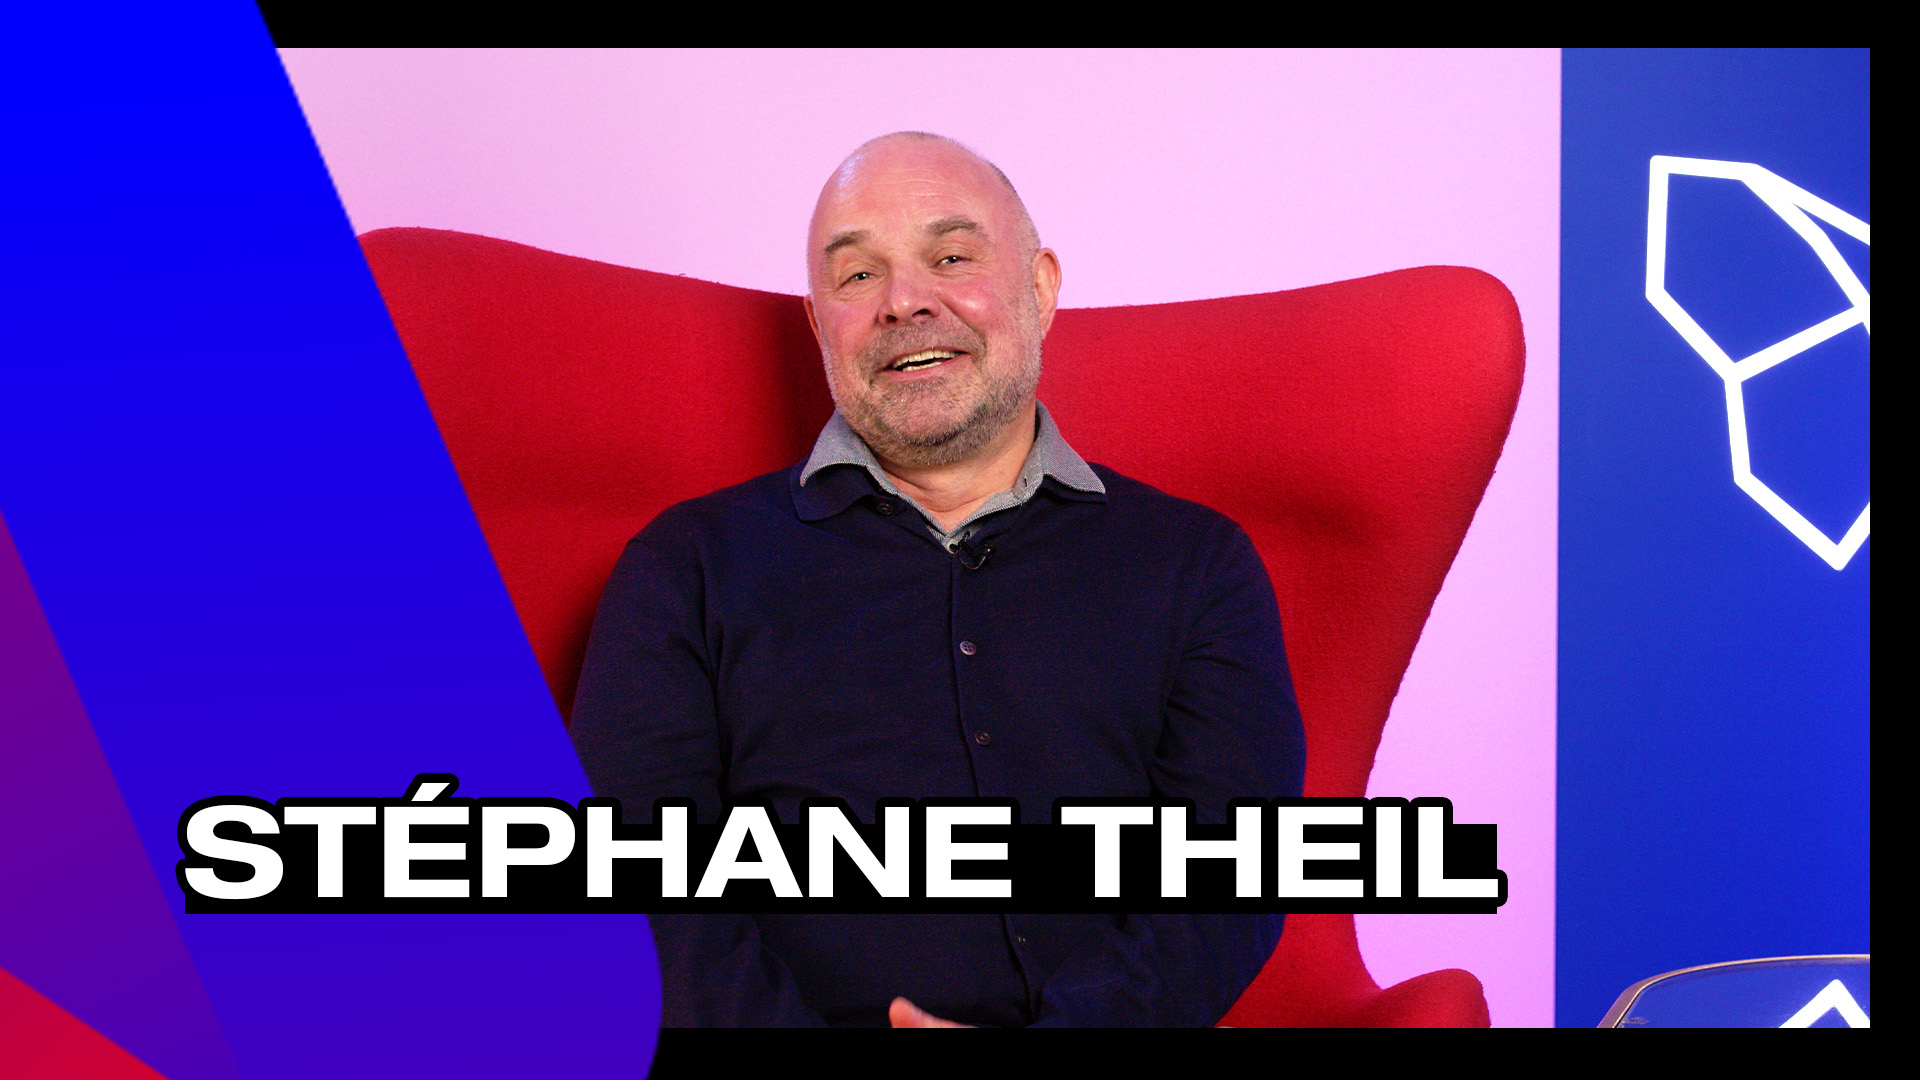 Stéphane Theil, fondateur de l'agence BienveiaStéphane Theil, fondateur de l’agence Bienveia